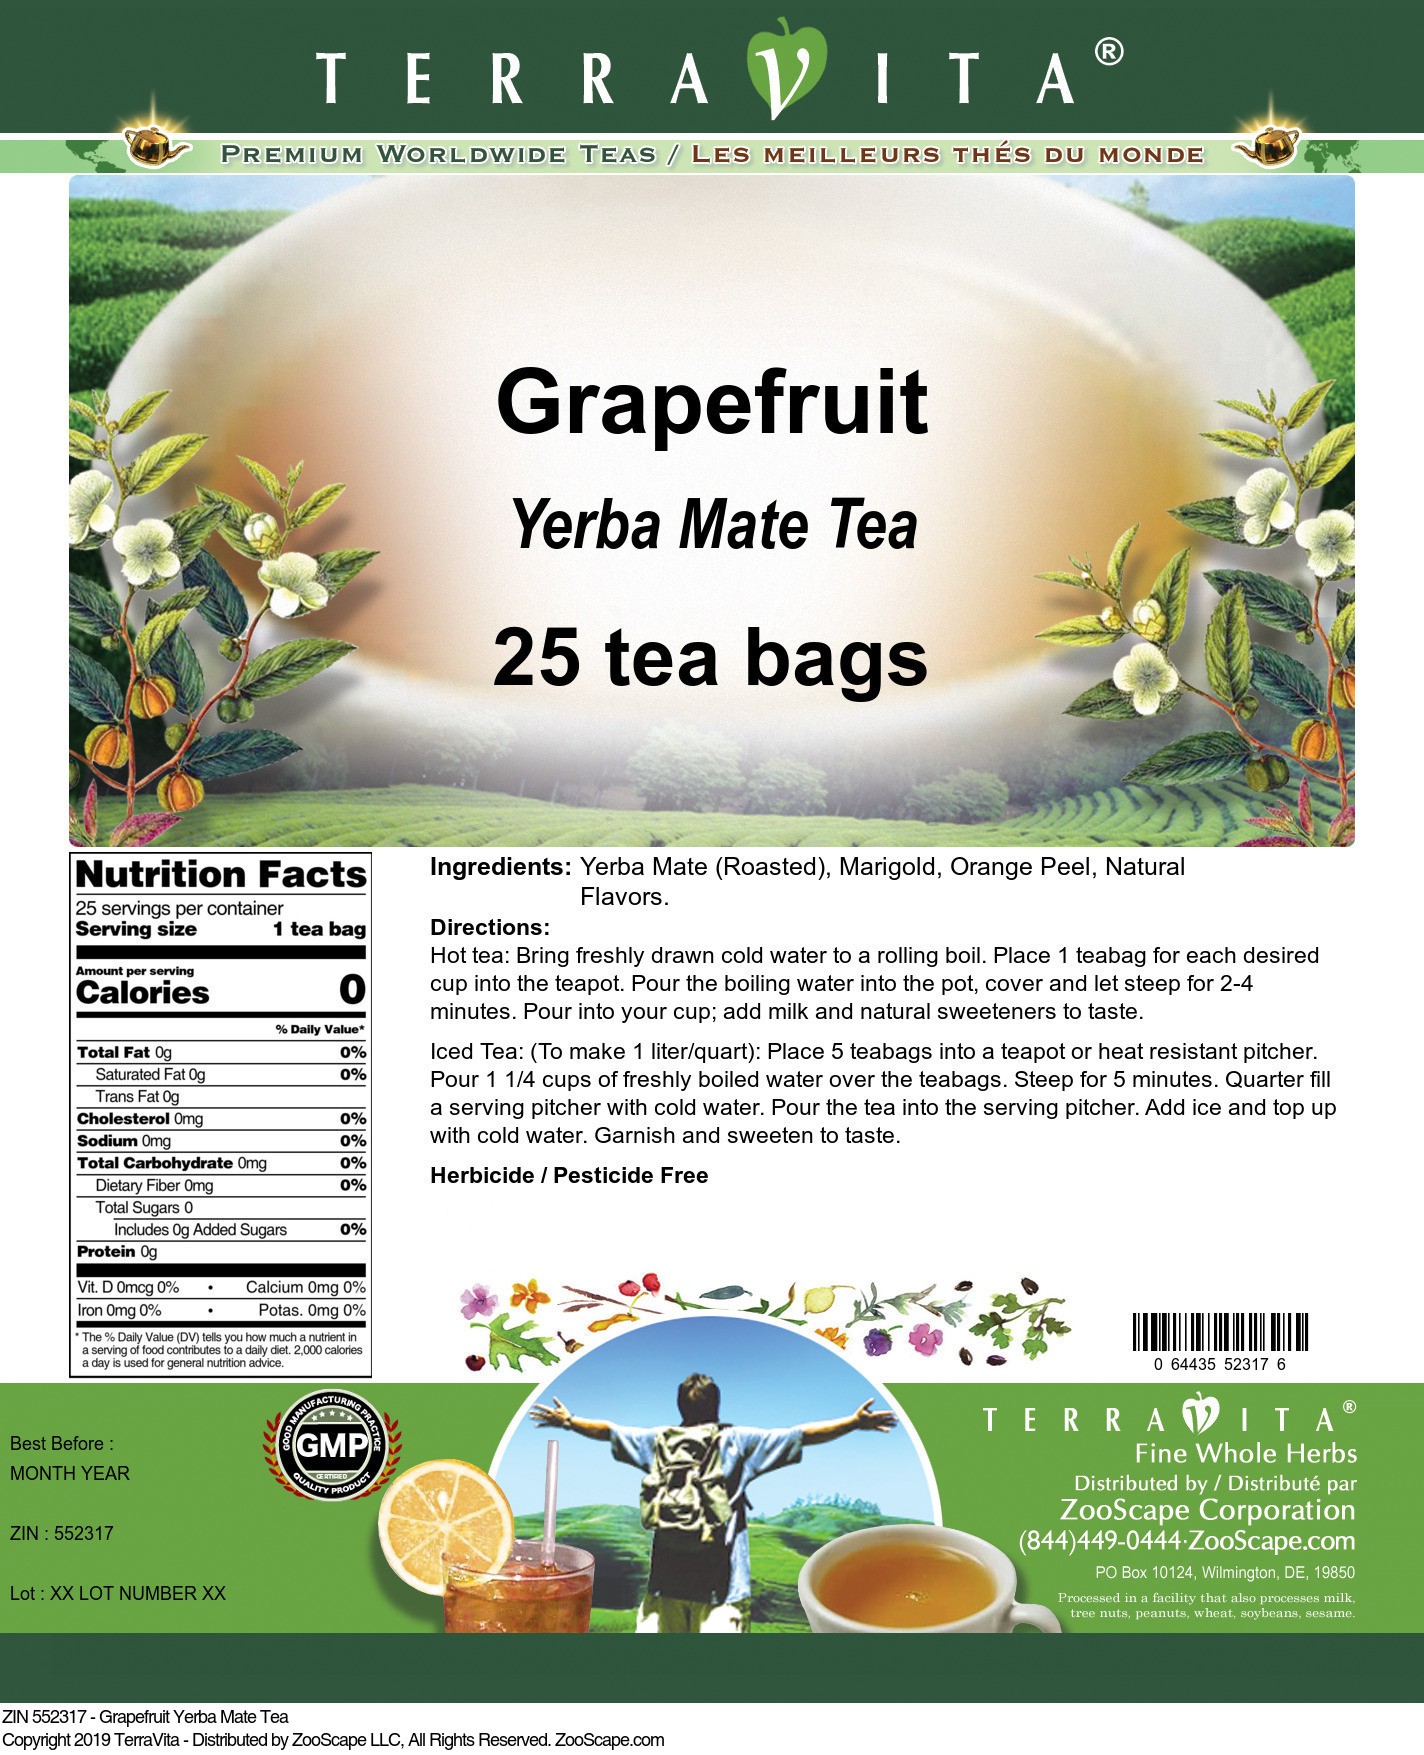 Grapefruit Yerba Mate Tea - Label